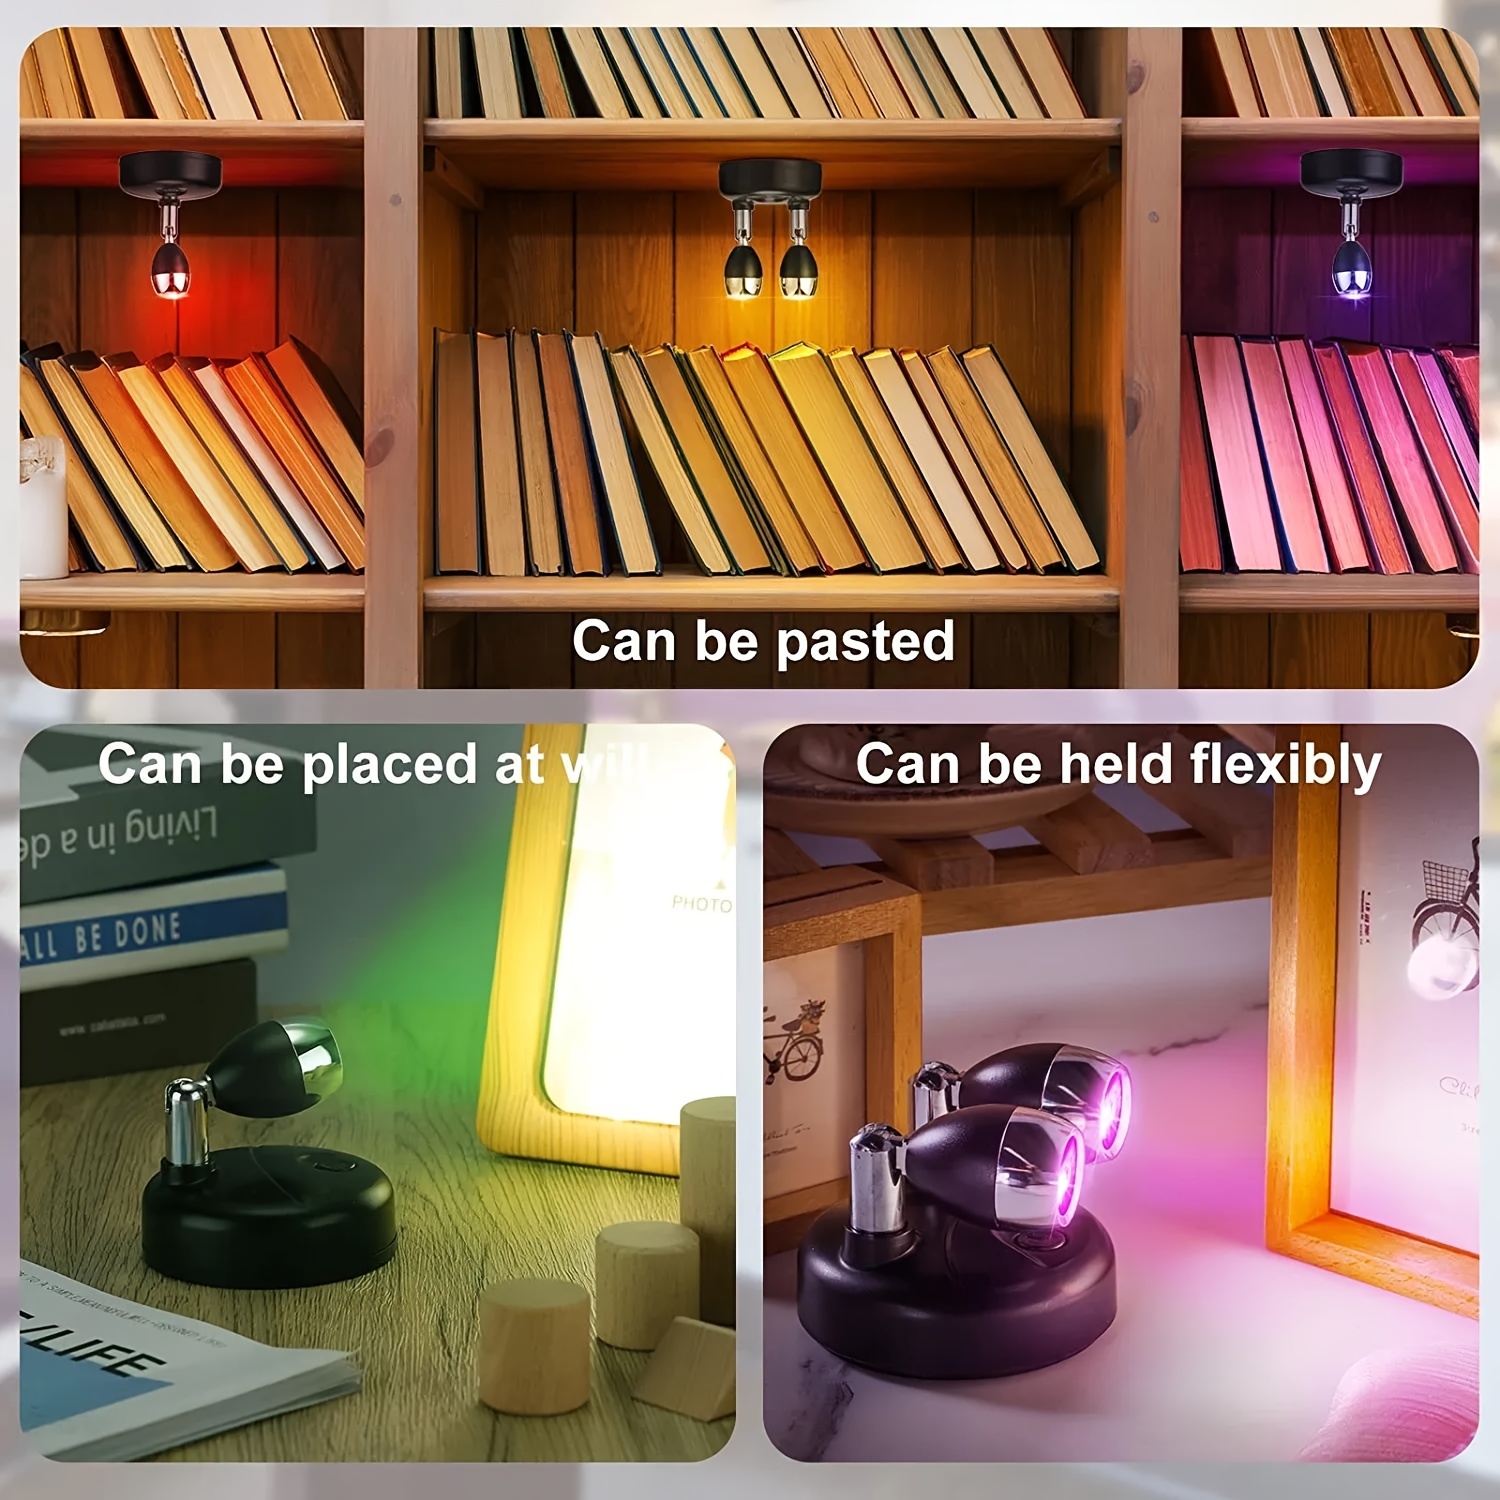 Foco LED inalámbrico, iluminación de acento a batería con 2 controles  remotos, luz de arte inalámbrica para pinturas, cabezal de luz giratorio,  luces